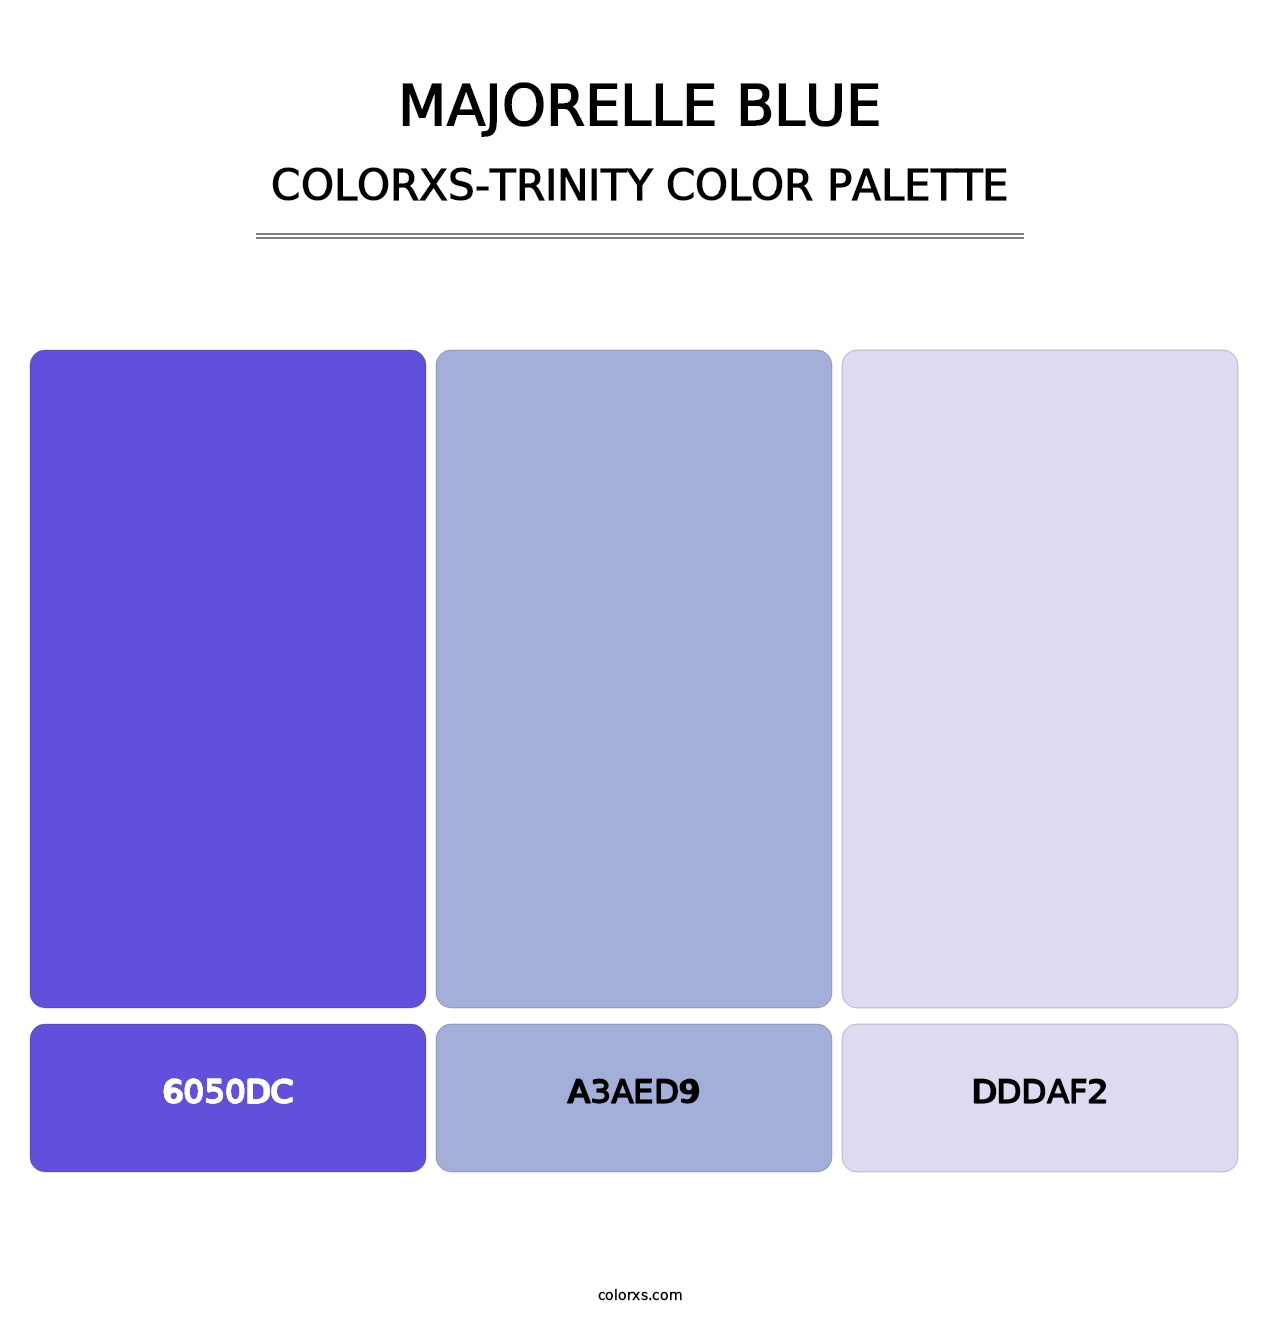 Majorelle Blue - Colorxs Trinity Palette